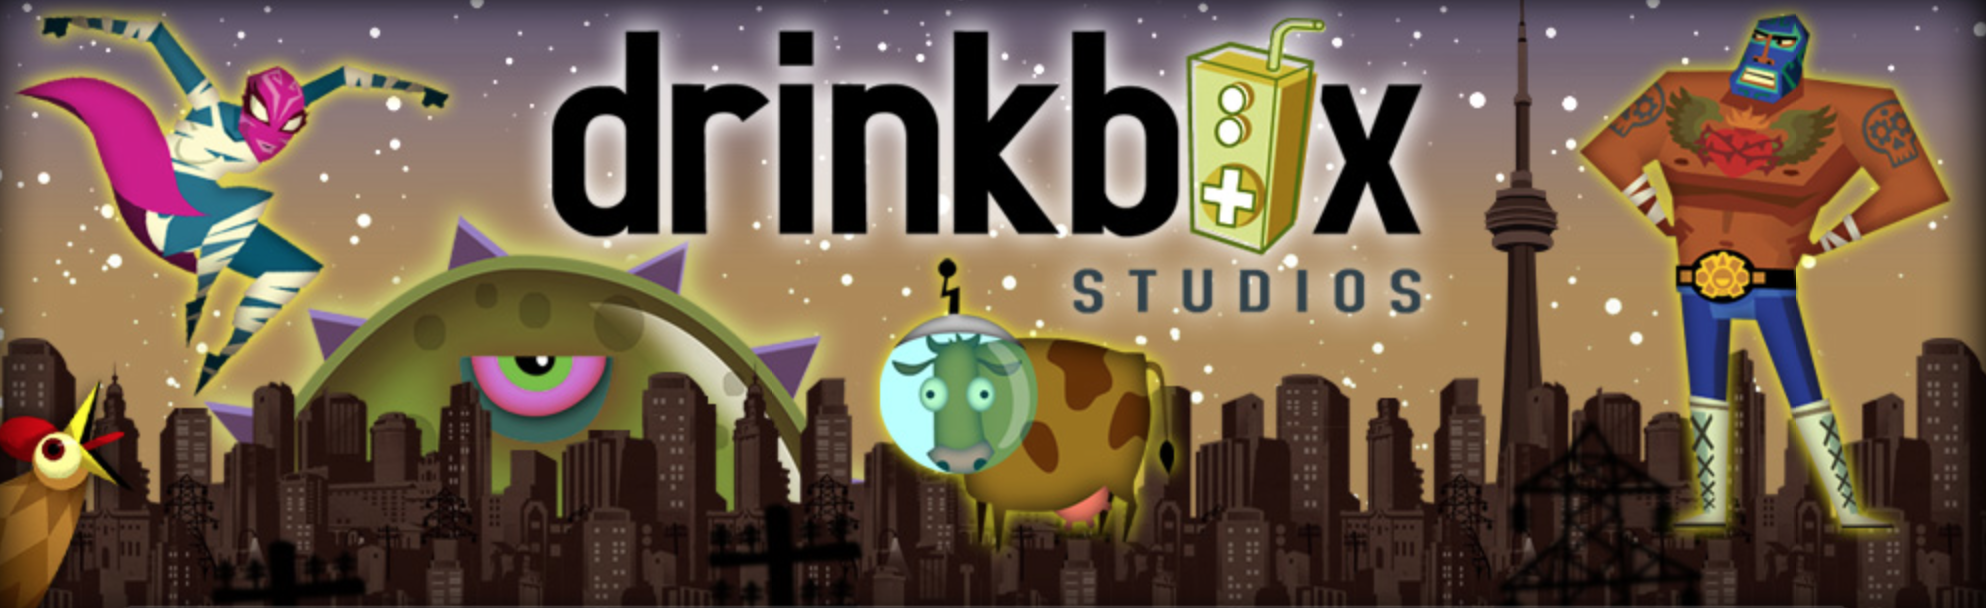 drinkbox studios